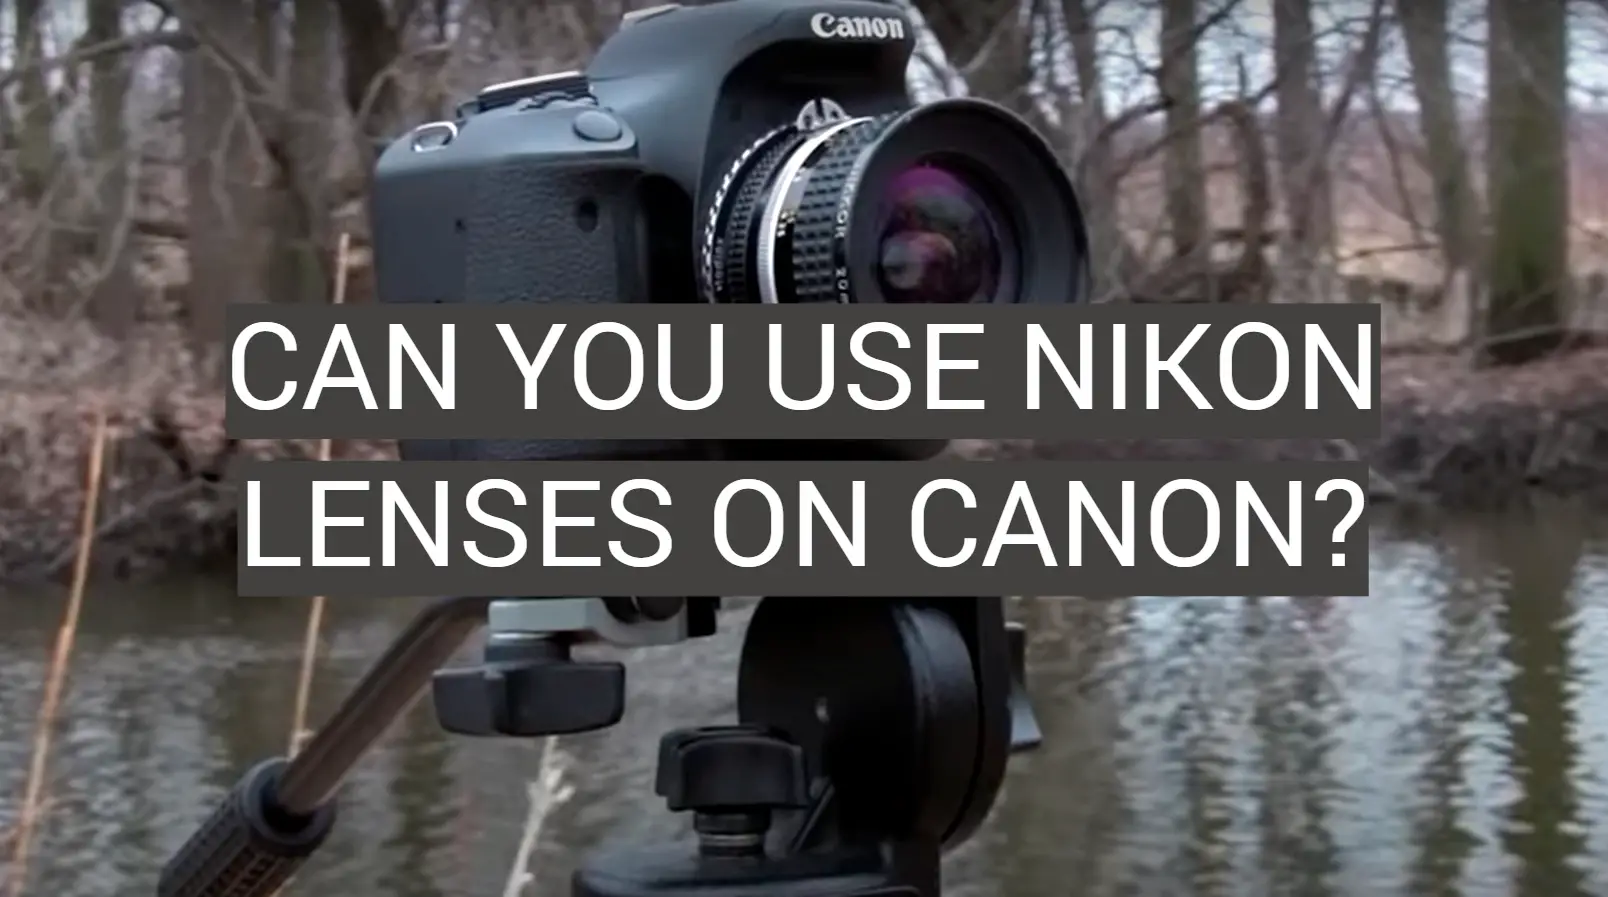 Can You Use Nikon Lenses on Canon?